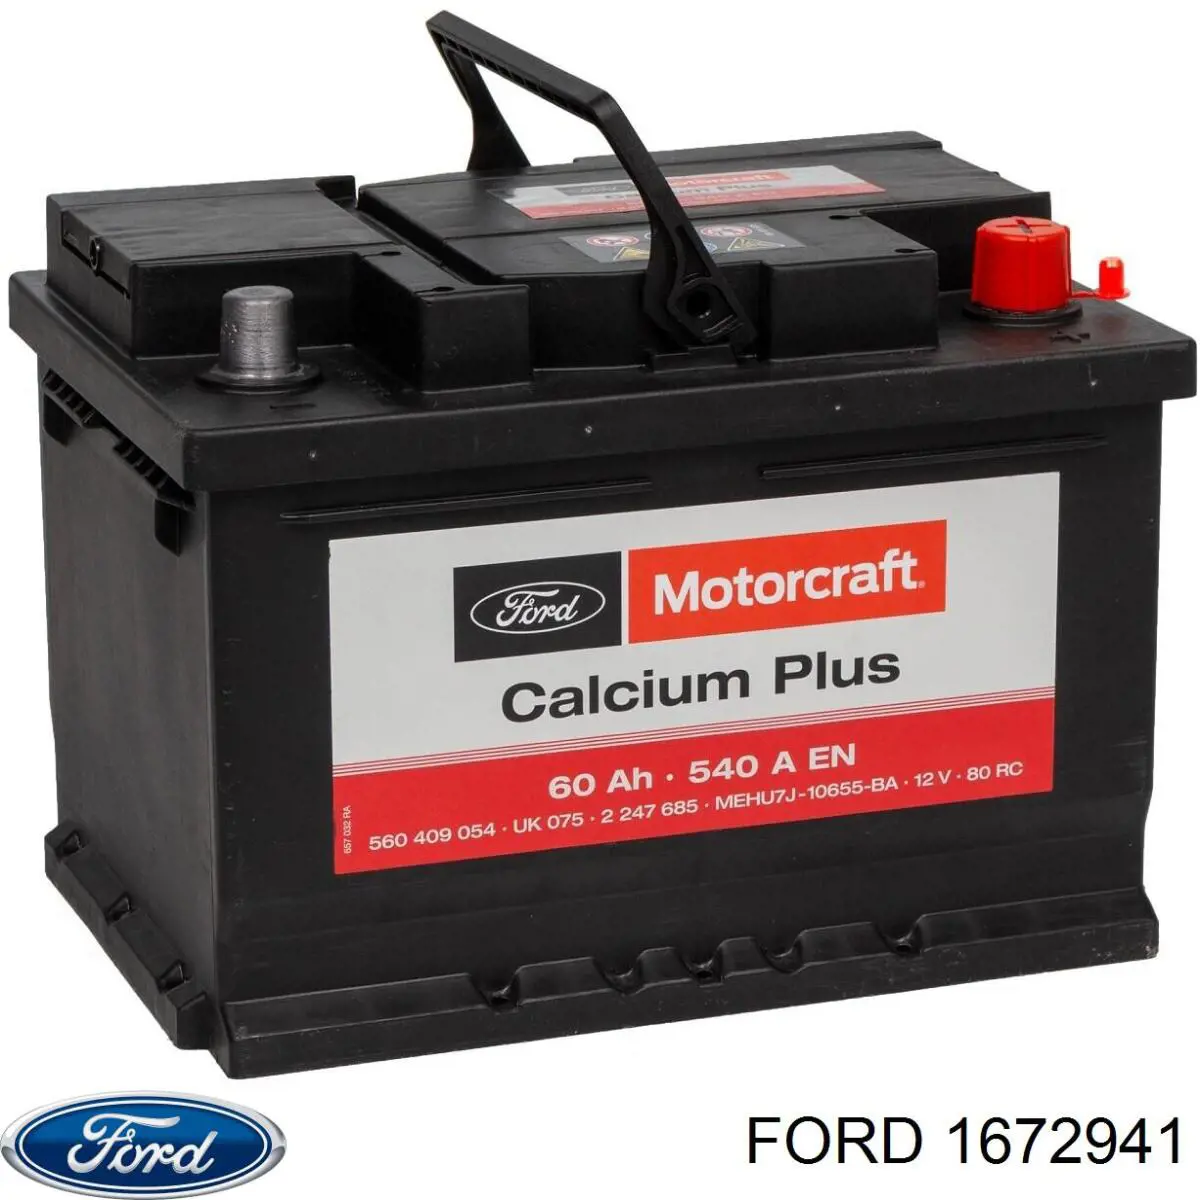 1672941 Ford bateria recarregável (pilha)